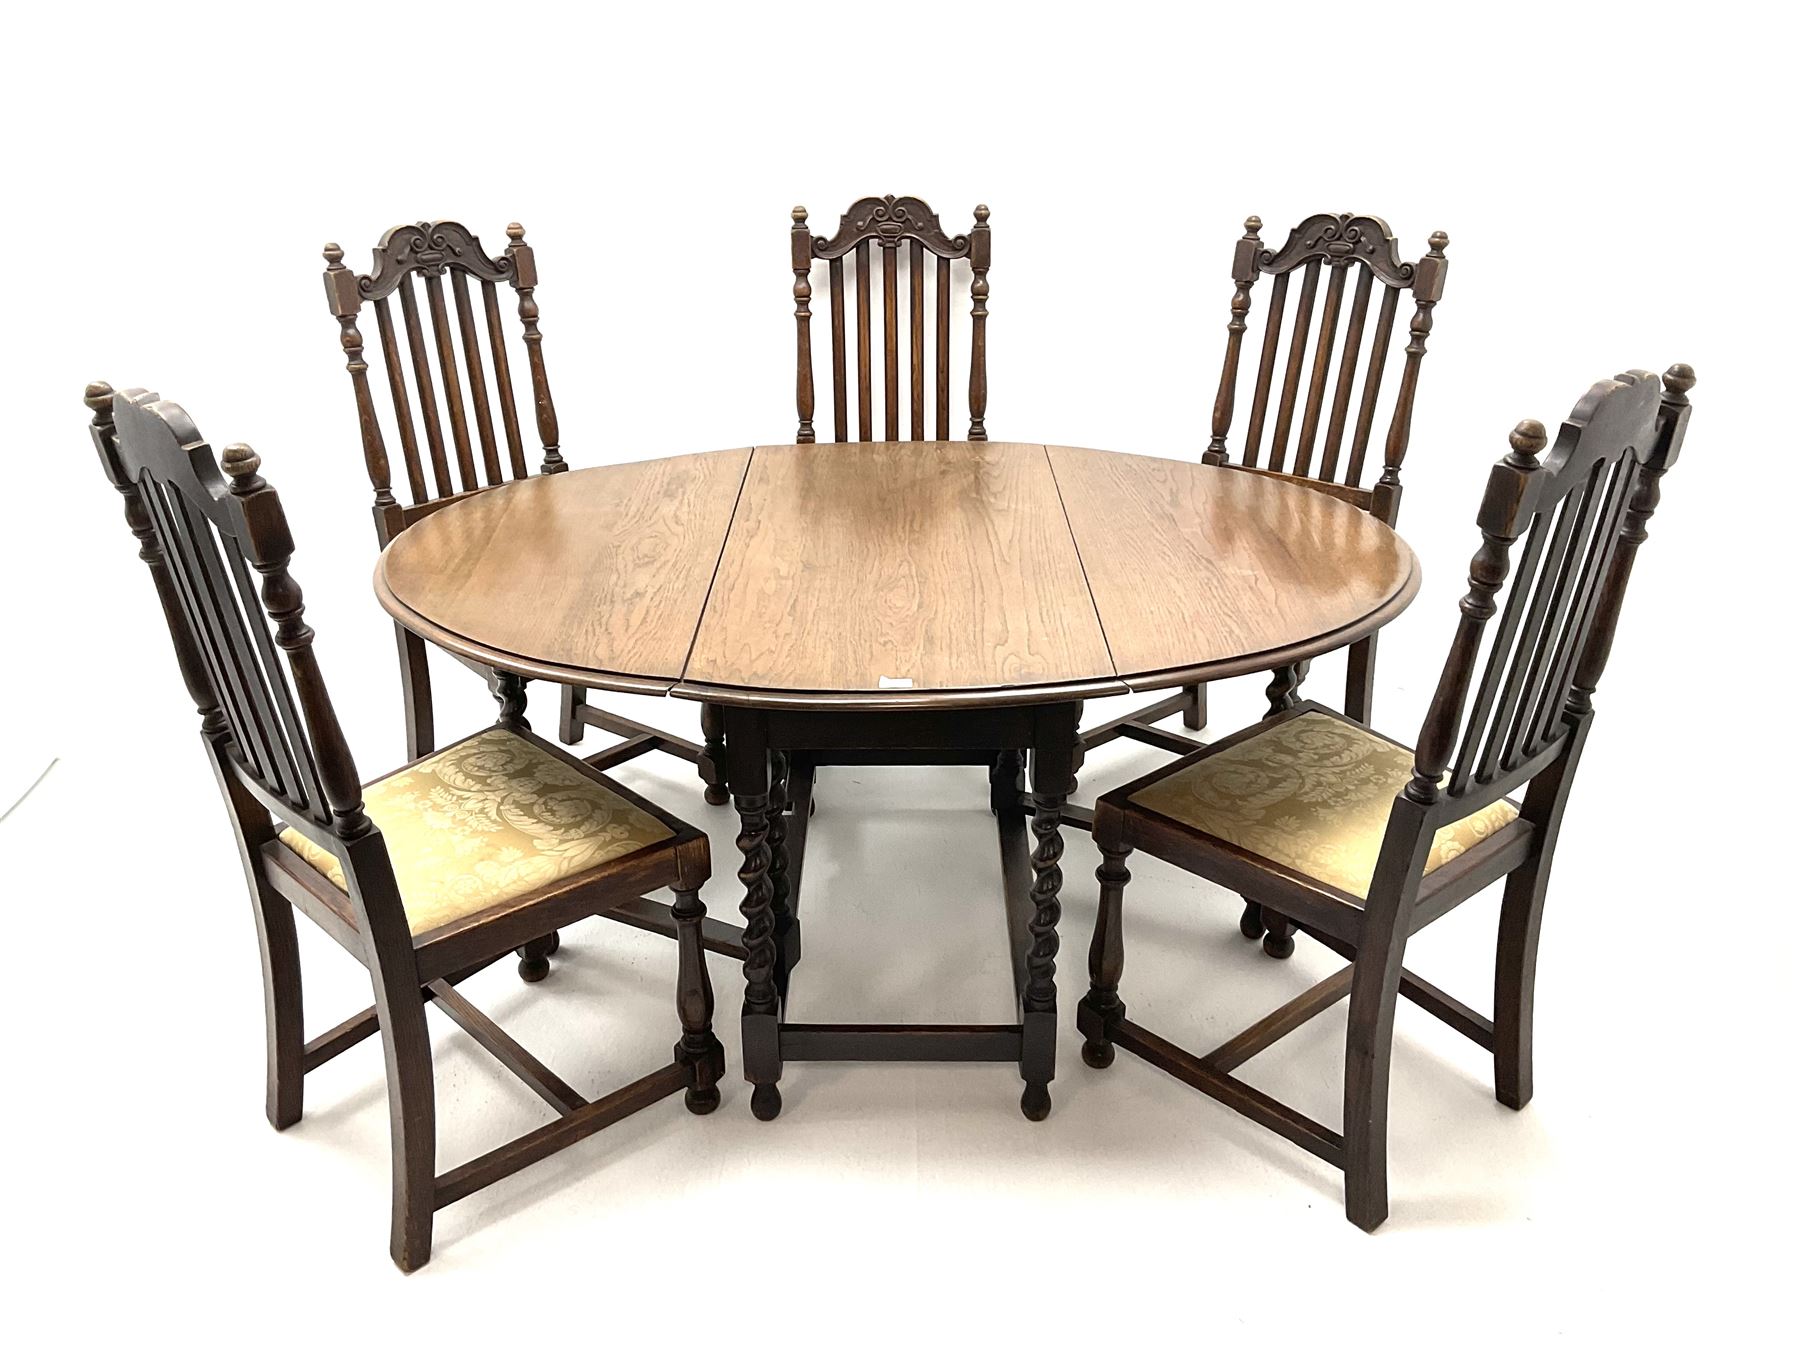 Early 20th century oak barley twist oval drop leaf dining table (H150cm